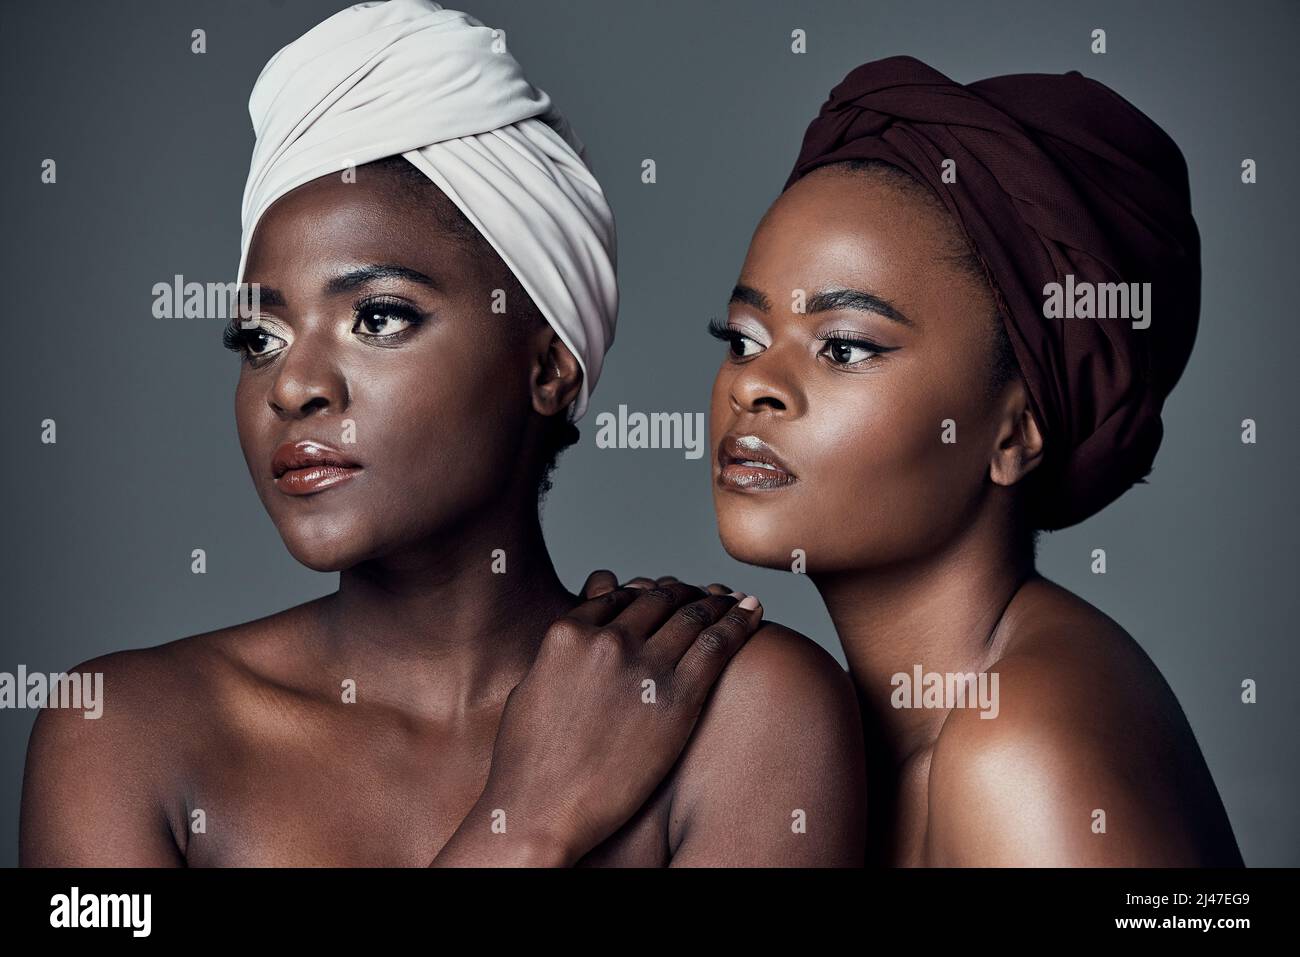 Afrikanische Königinnen. Studioaufnahme von zwei schönen jungen Frauen, die vor einem grauen Hintergrund posieren. Stockfoto